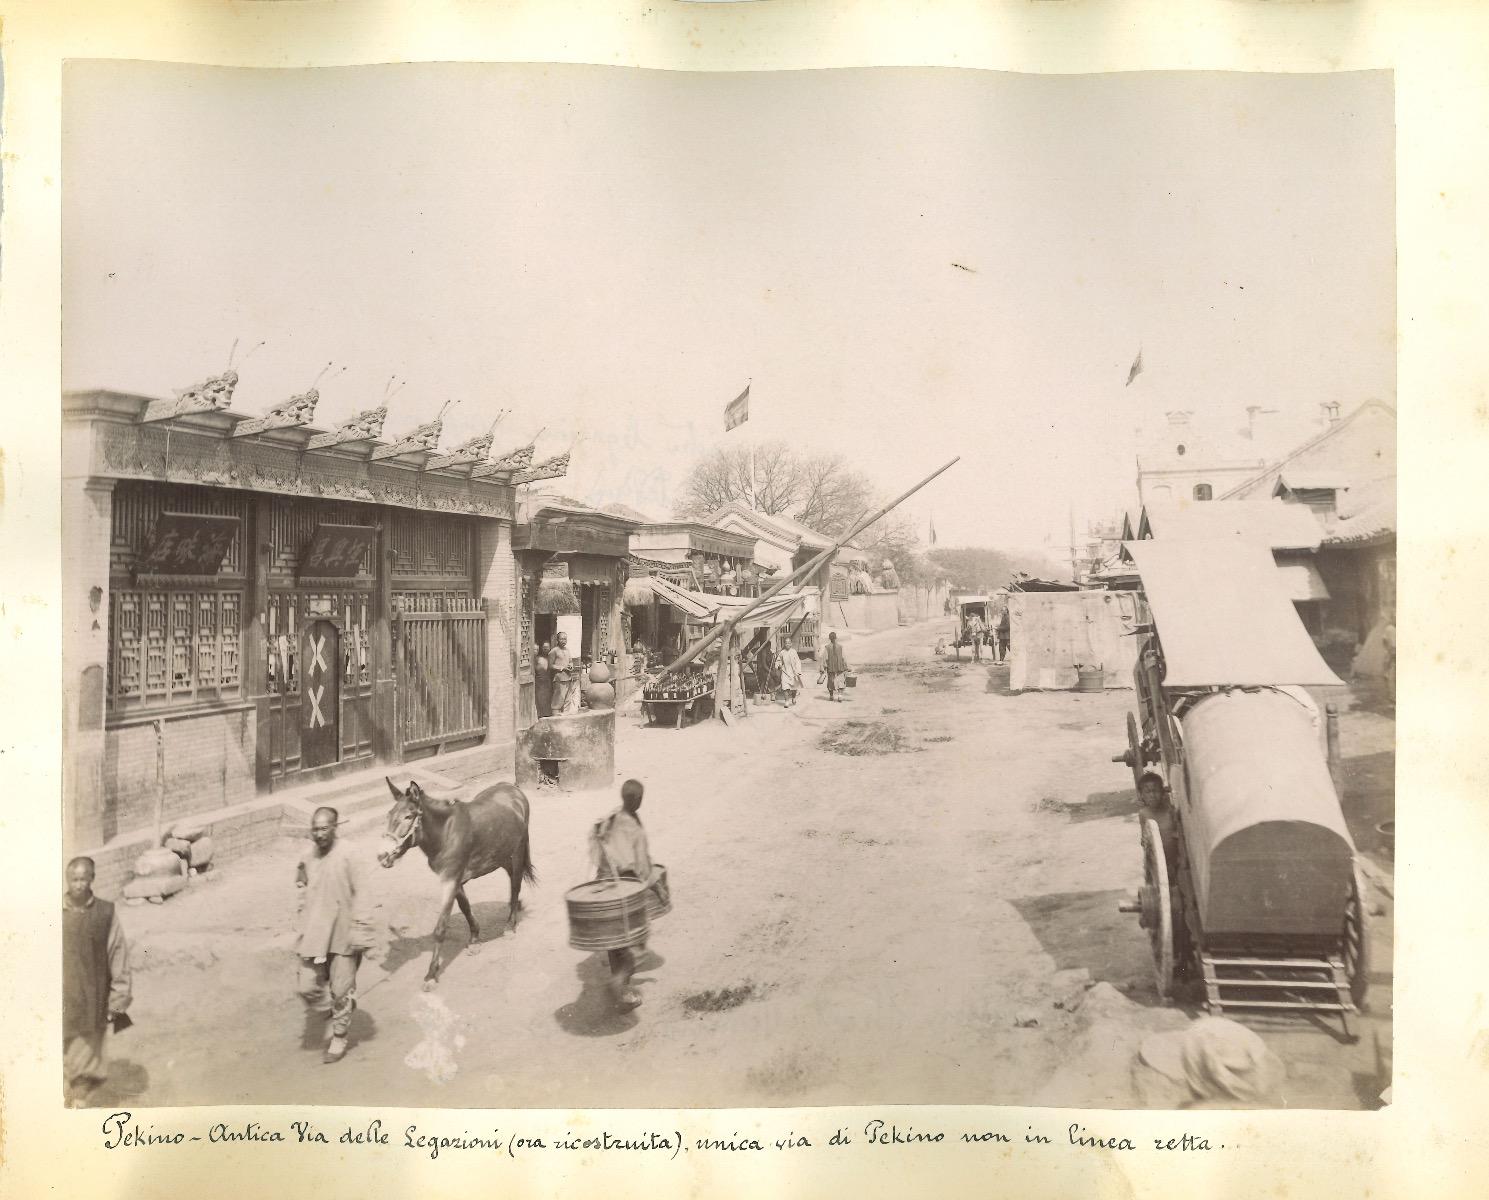 Unknown Landscape Photograph - Ancient Views of Beijing - Albumen Prints - 1890s